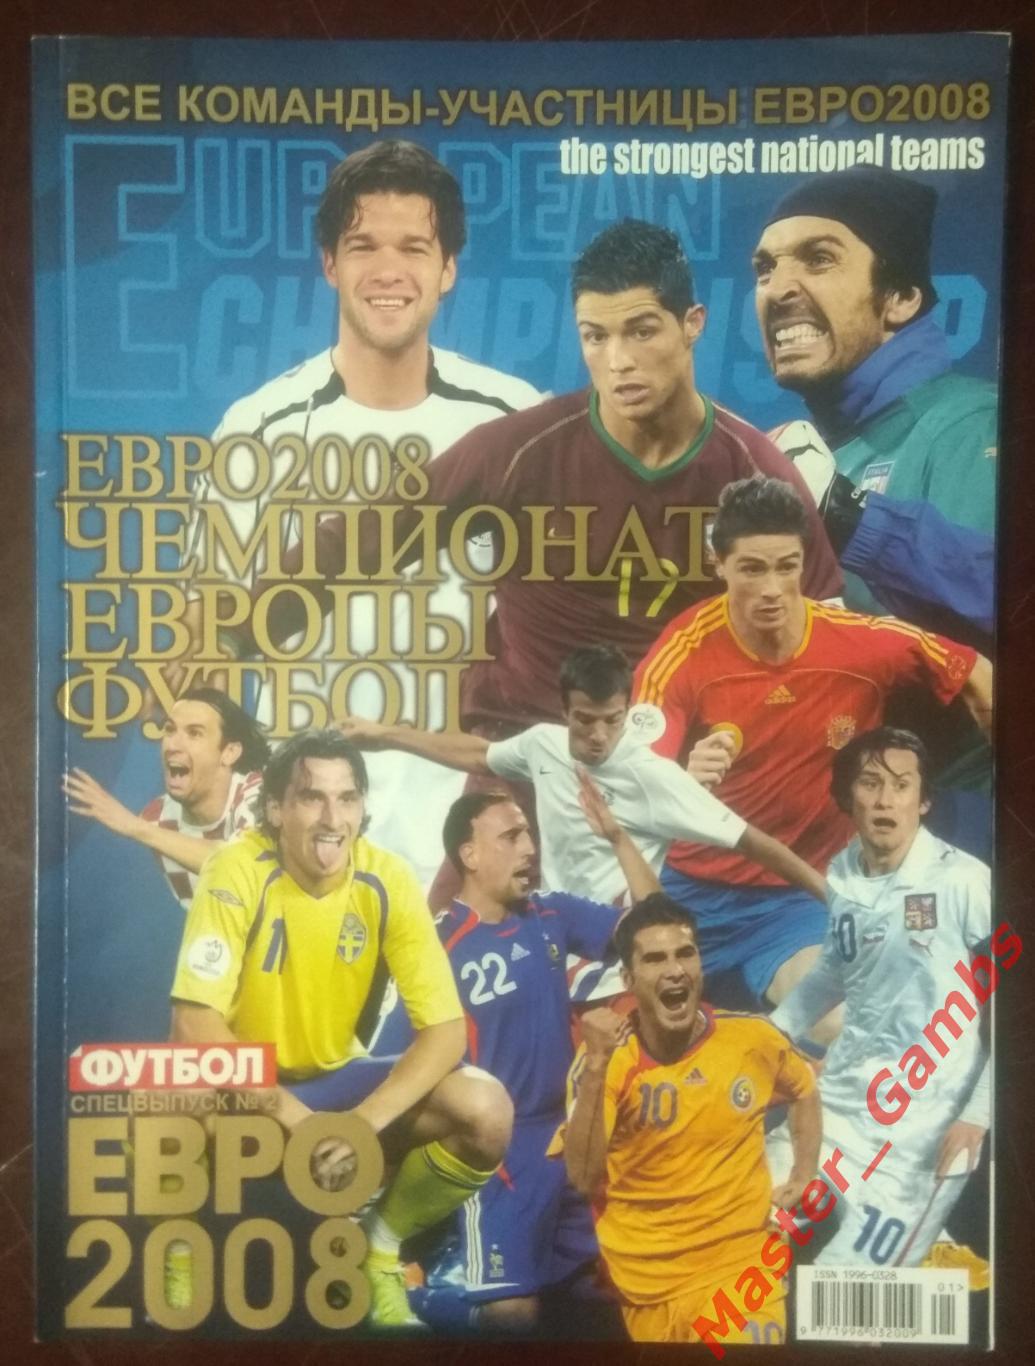 Еженедельник Футбол - спецвыпуск Чемпионат Европы 2008